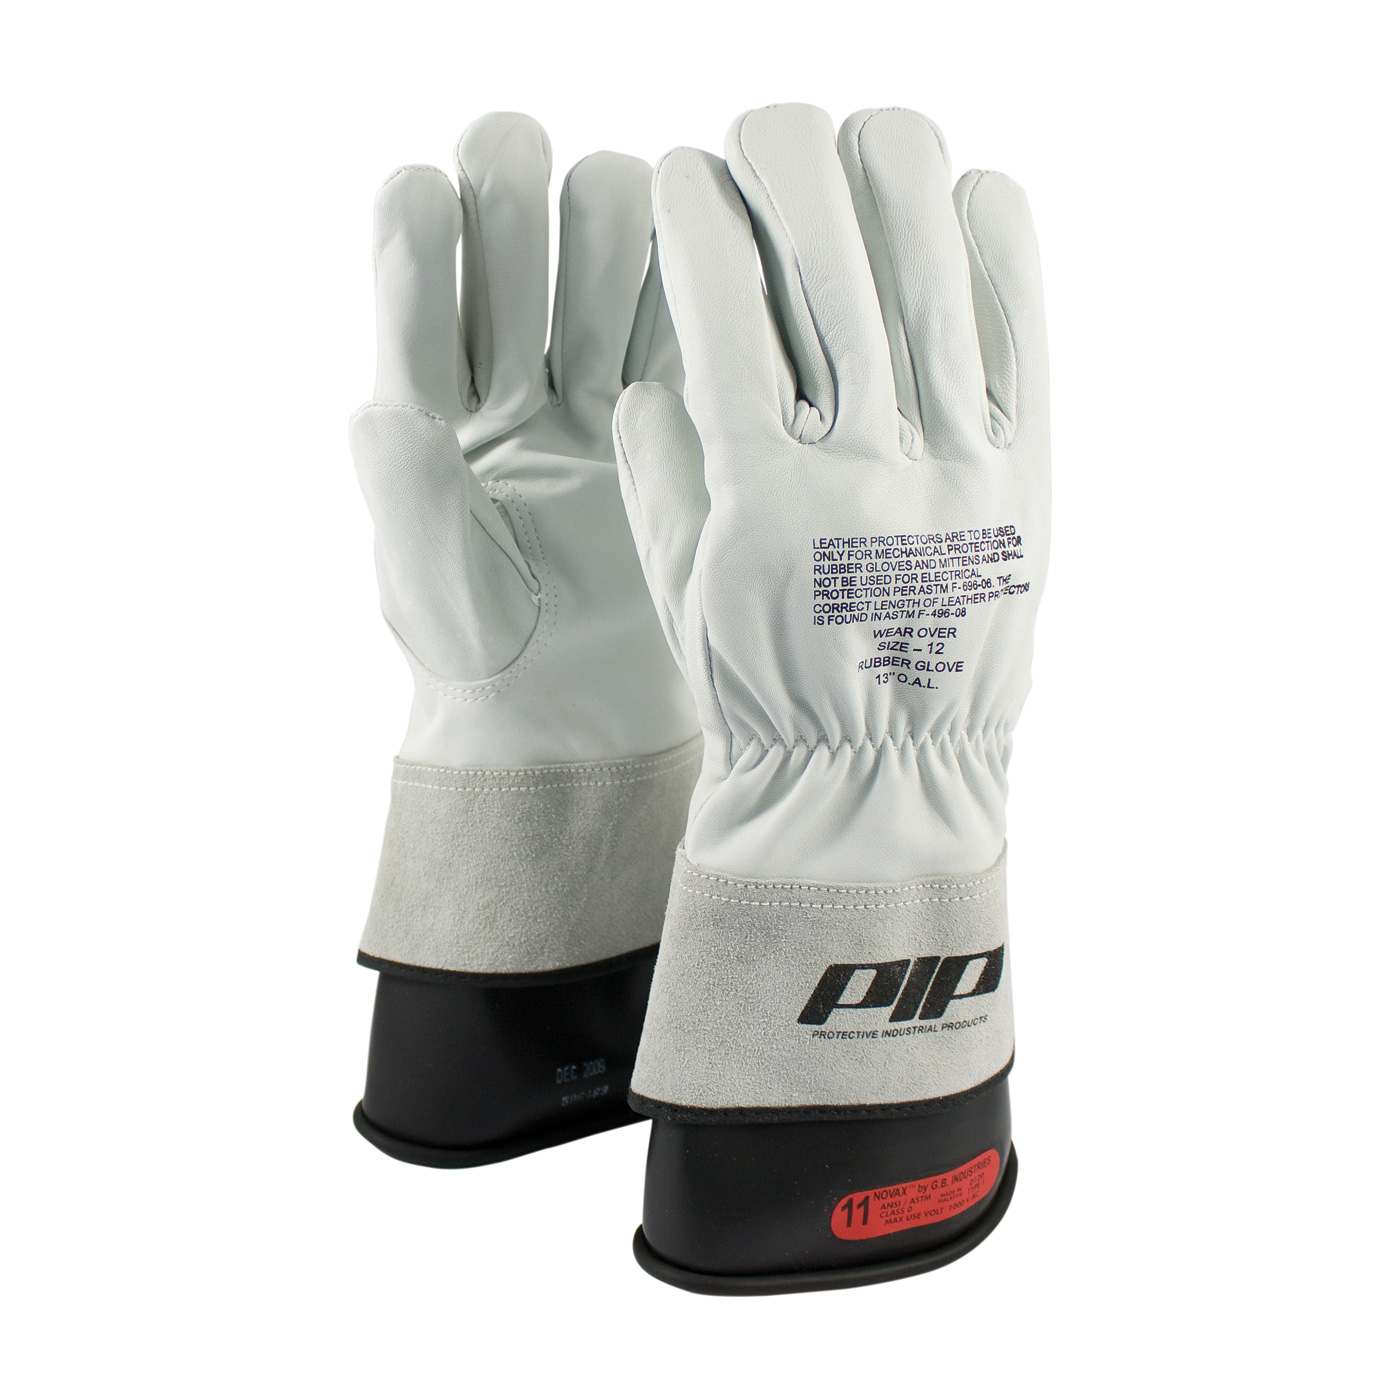 CHANCE® Glove Protector 10IN Goatskin Nylon Strap, Size 10-10H